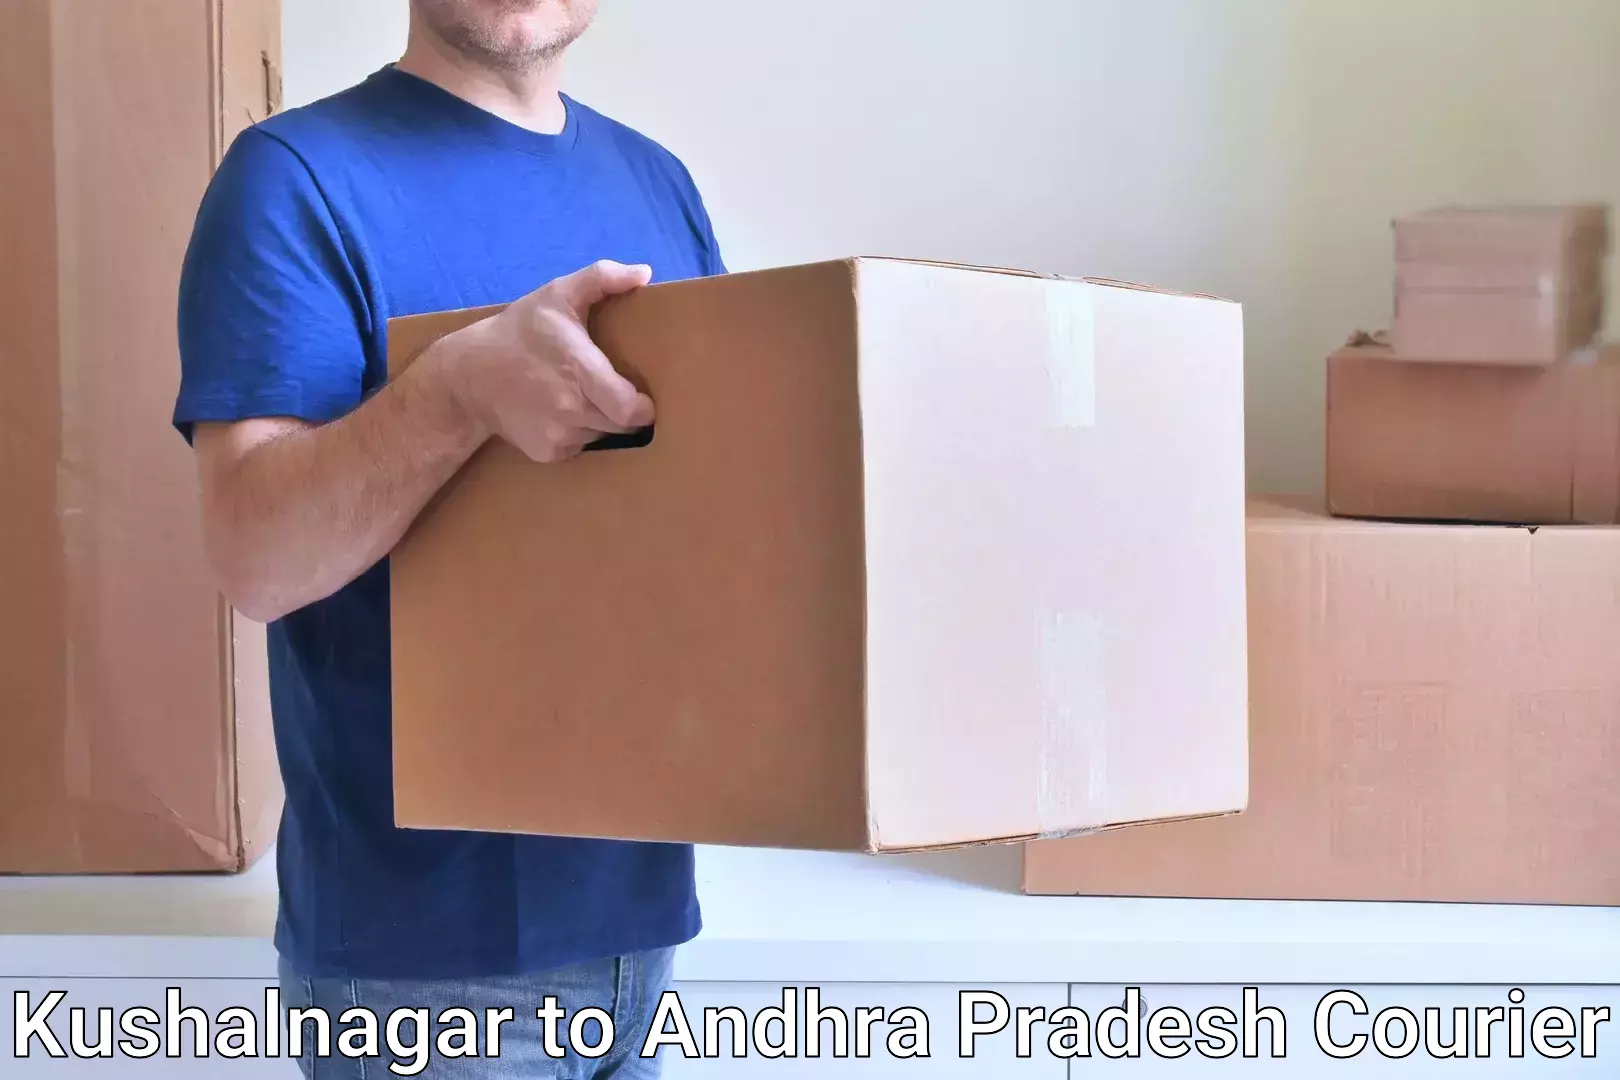 Personalized courier experiences Kushalnagar to Samalkot